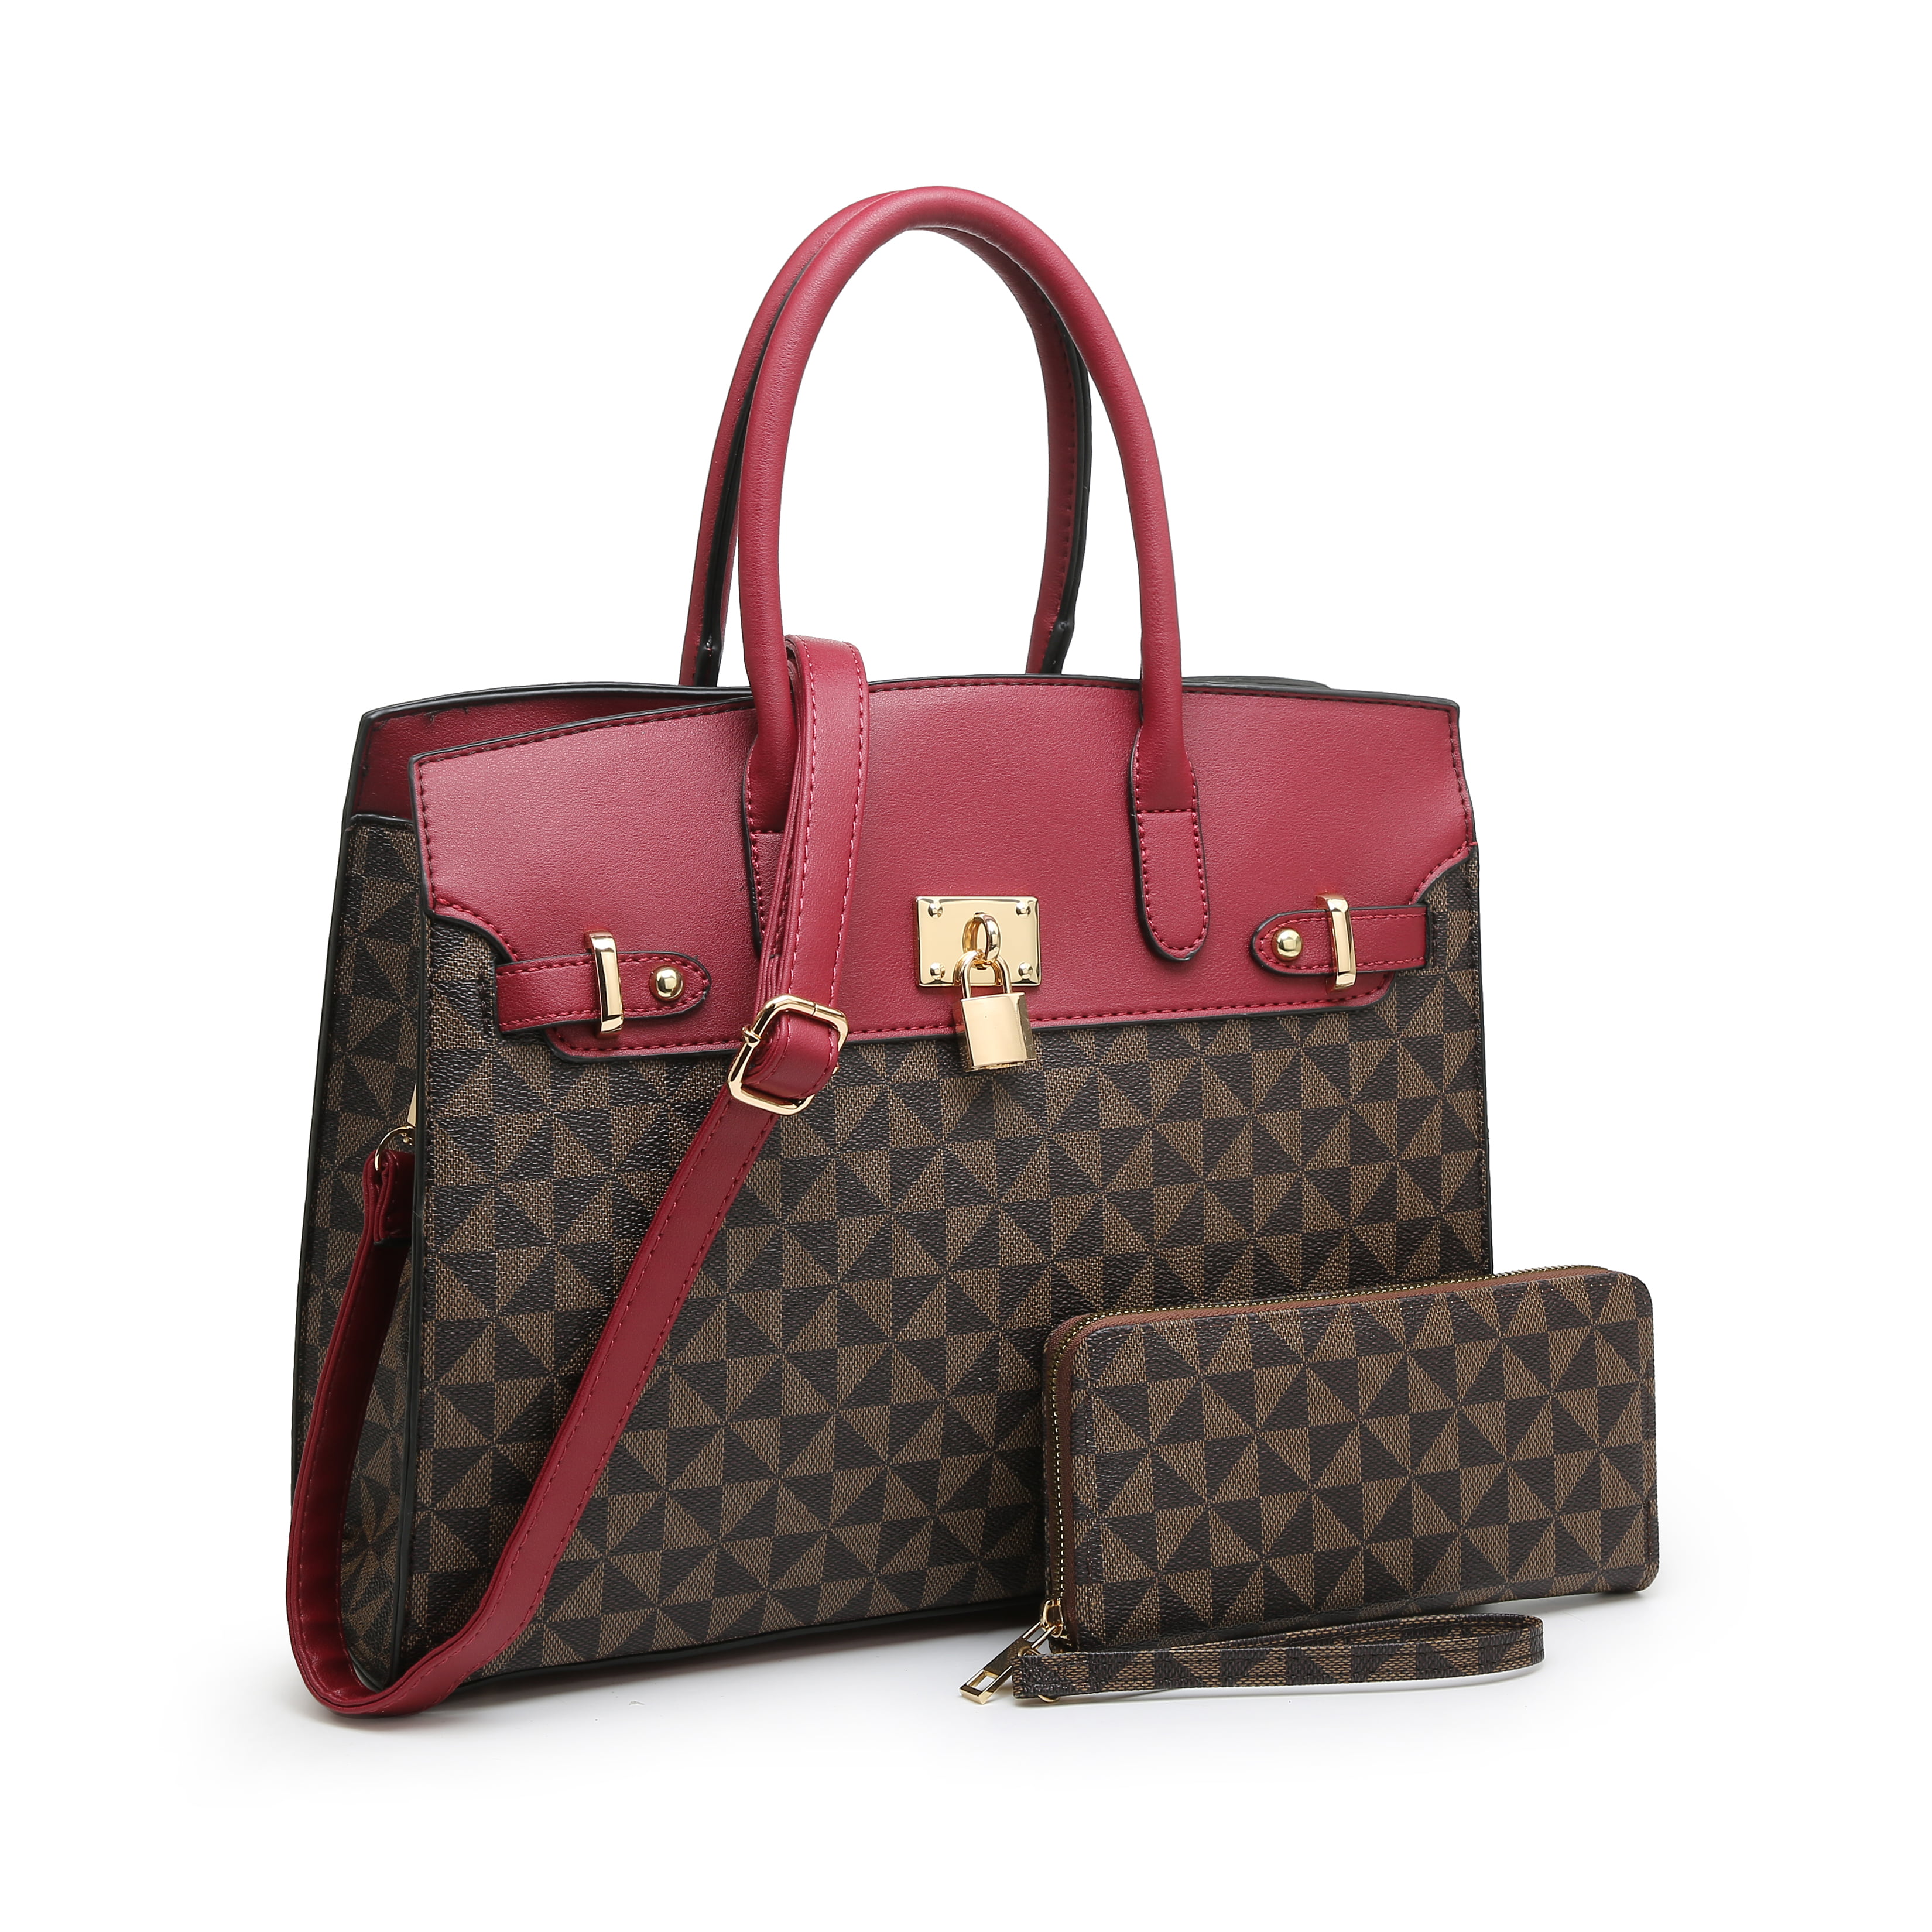 POPPY Handbags Gift Set 2 in 1 Women's Top Handle Satchel Totes Handbag ...